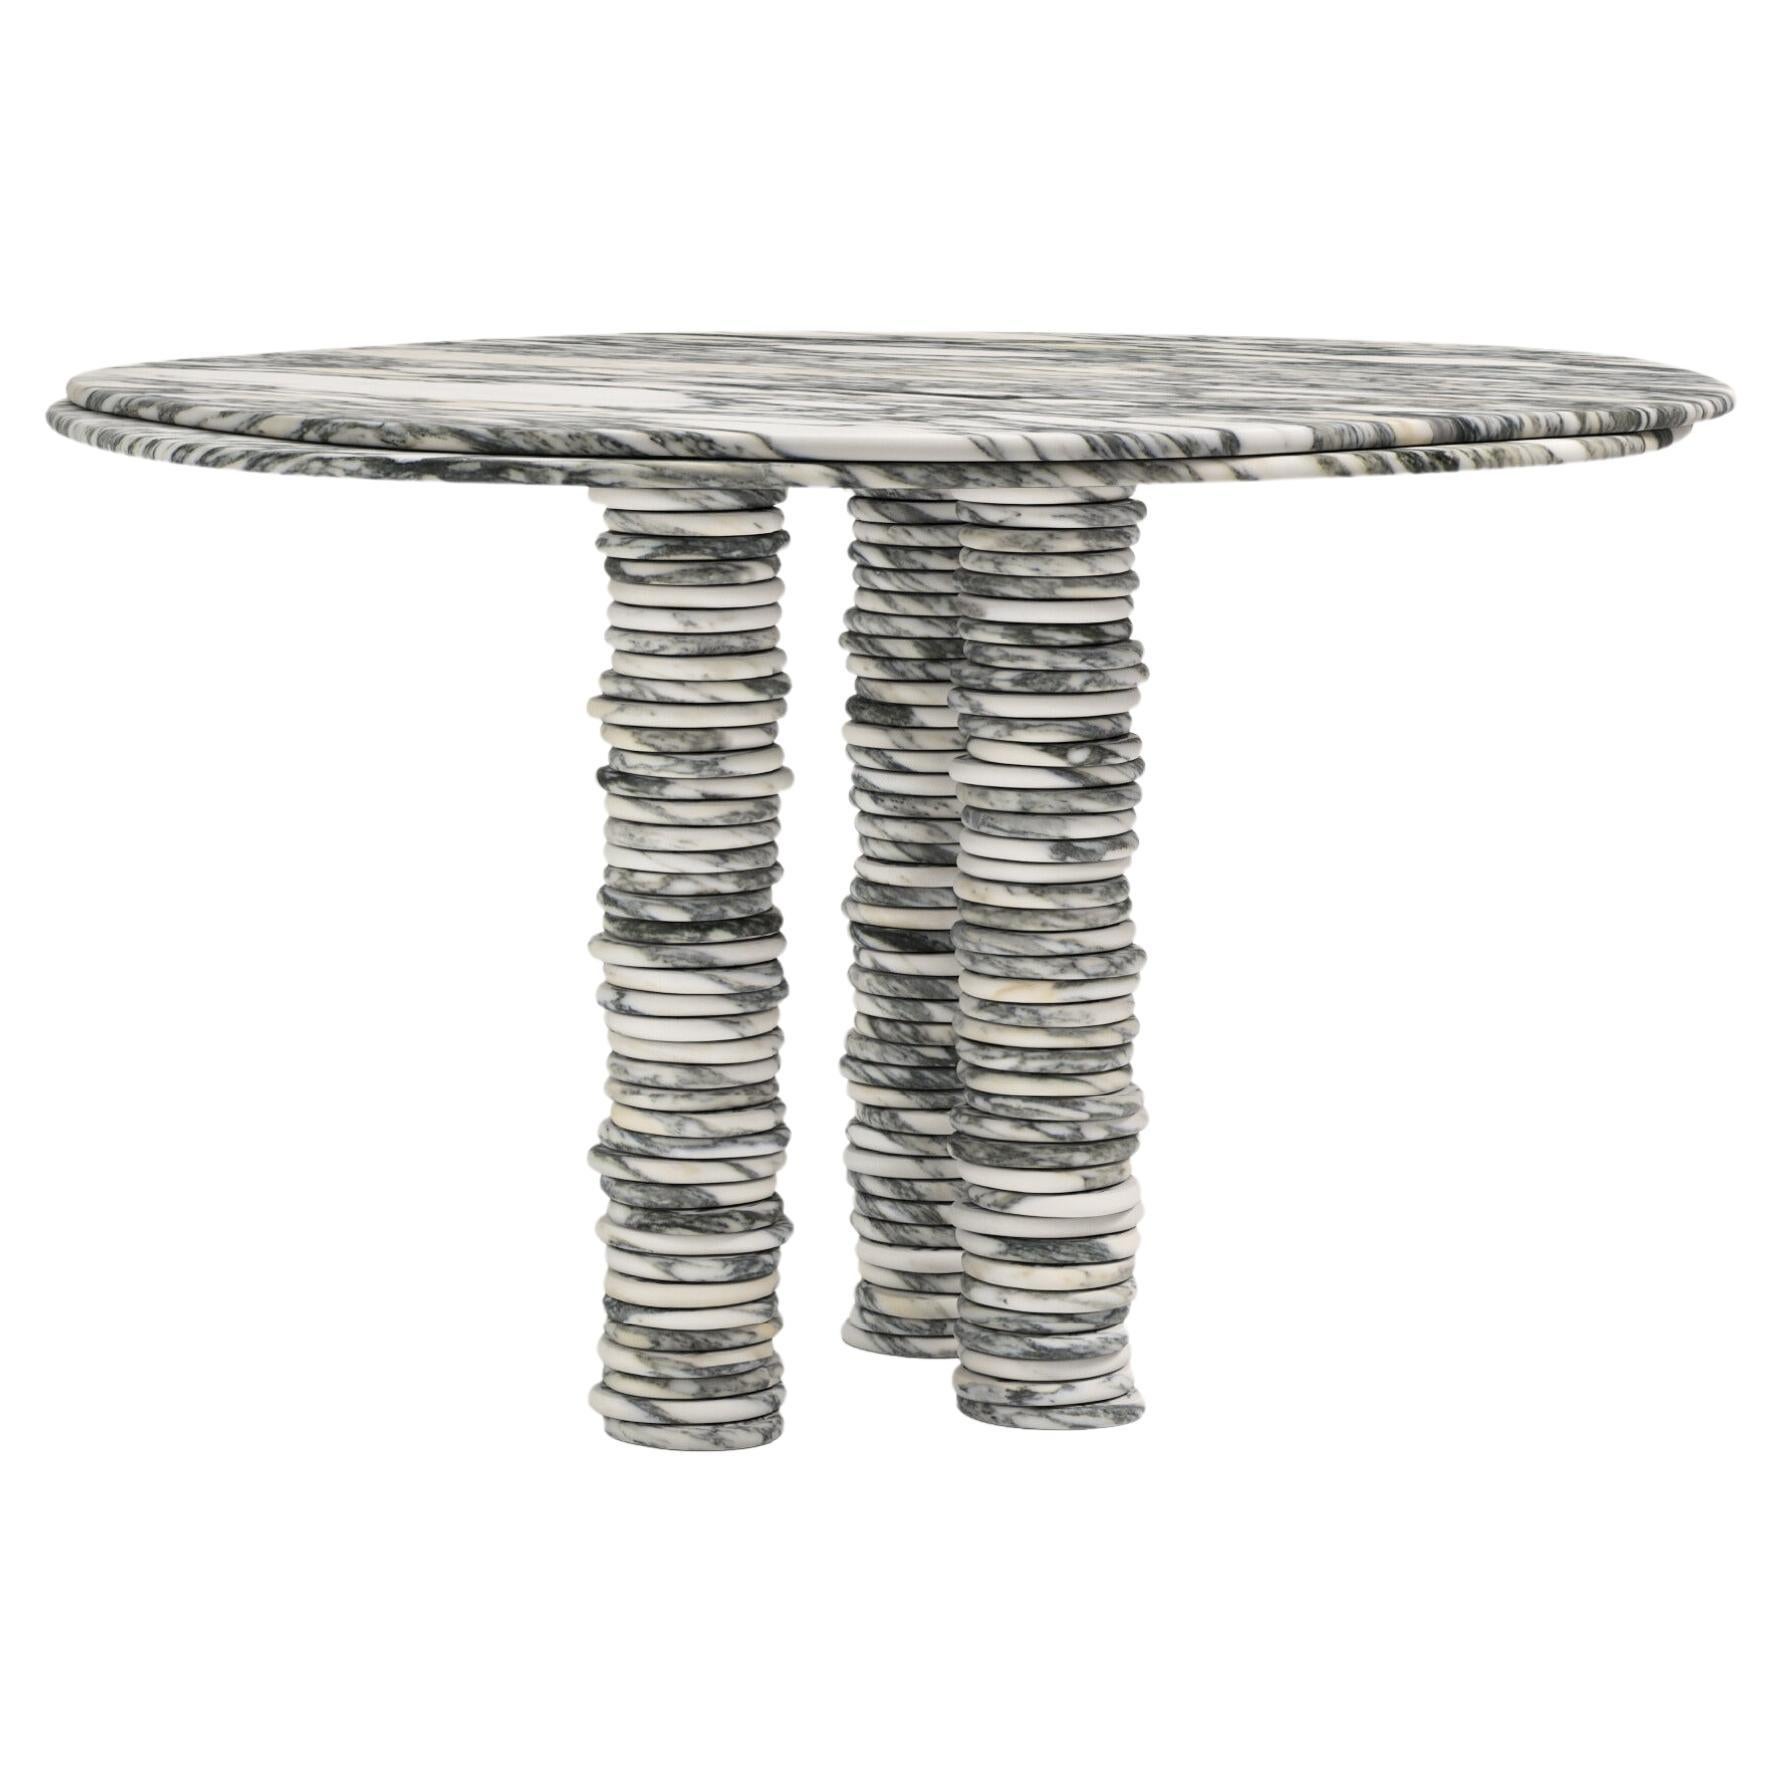 FORM(LA) Onda Round Dining Table 54”L x 54”W x 29”H Arabescato Corchia Marble For Sale